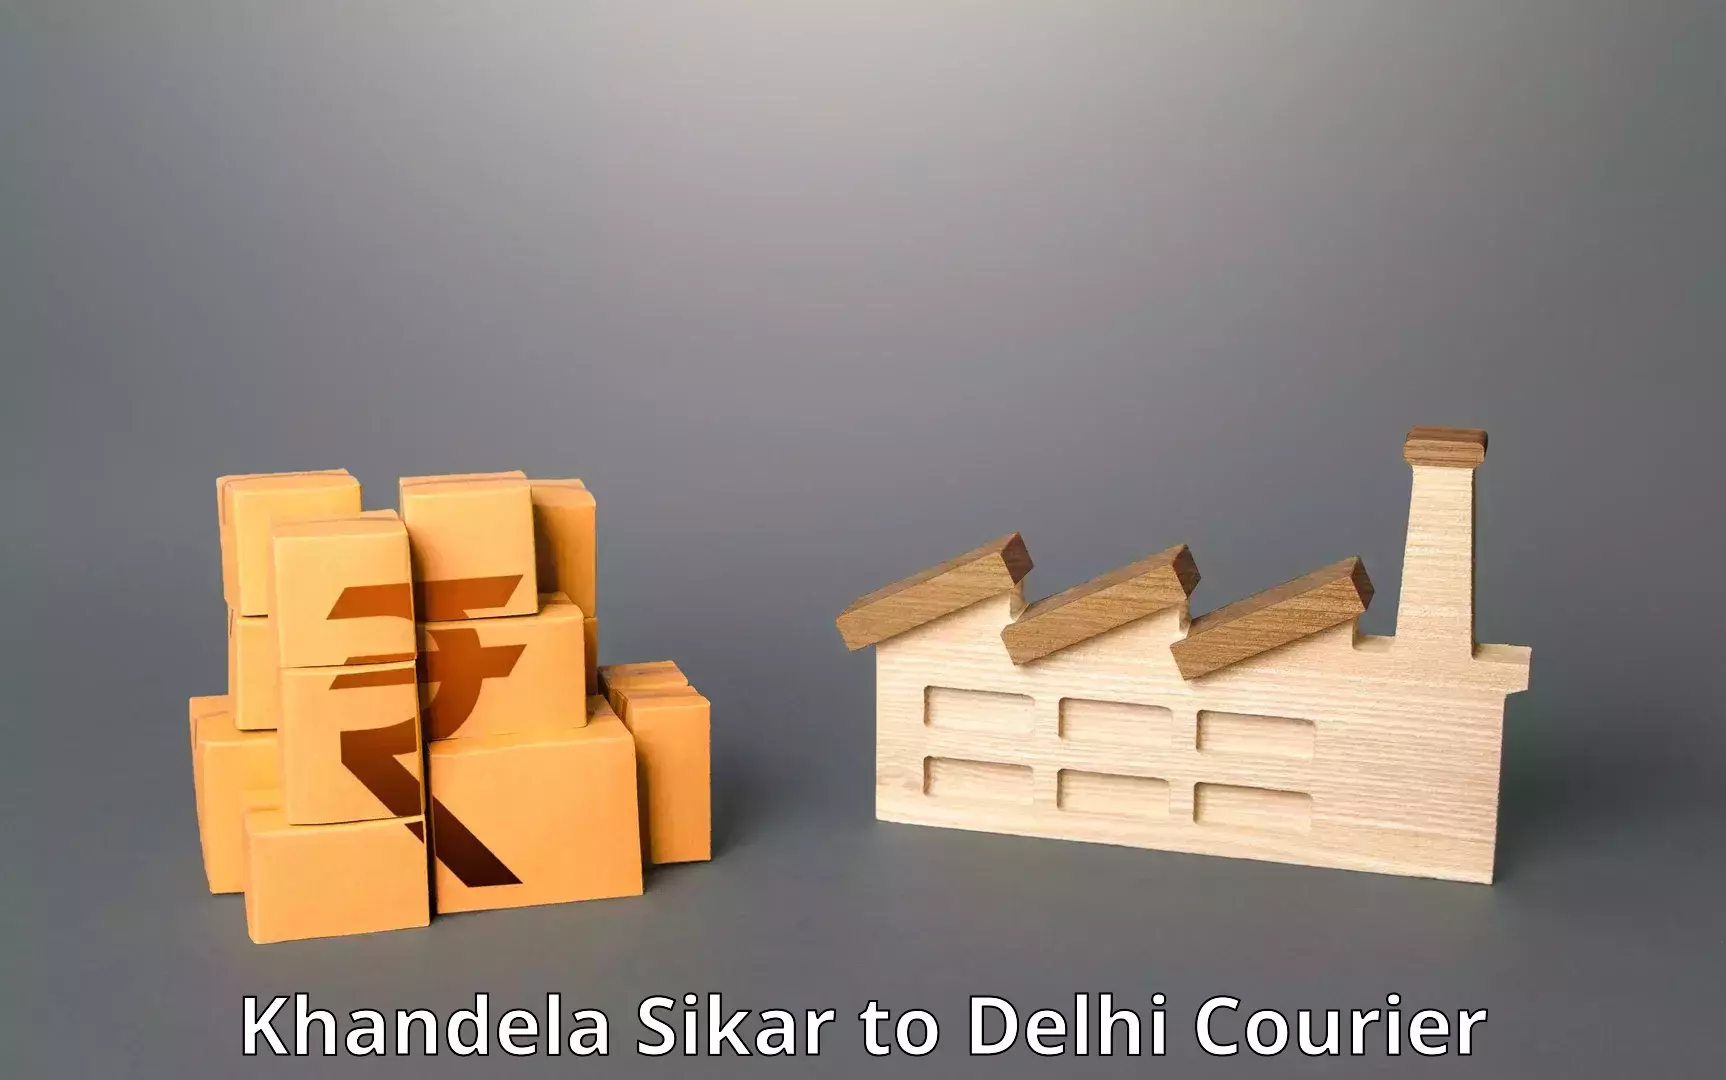 Courier service comparison Khandela Sikar to Sansad Marg